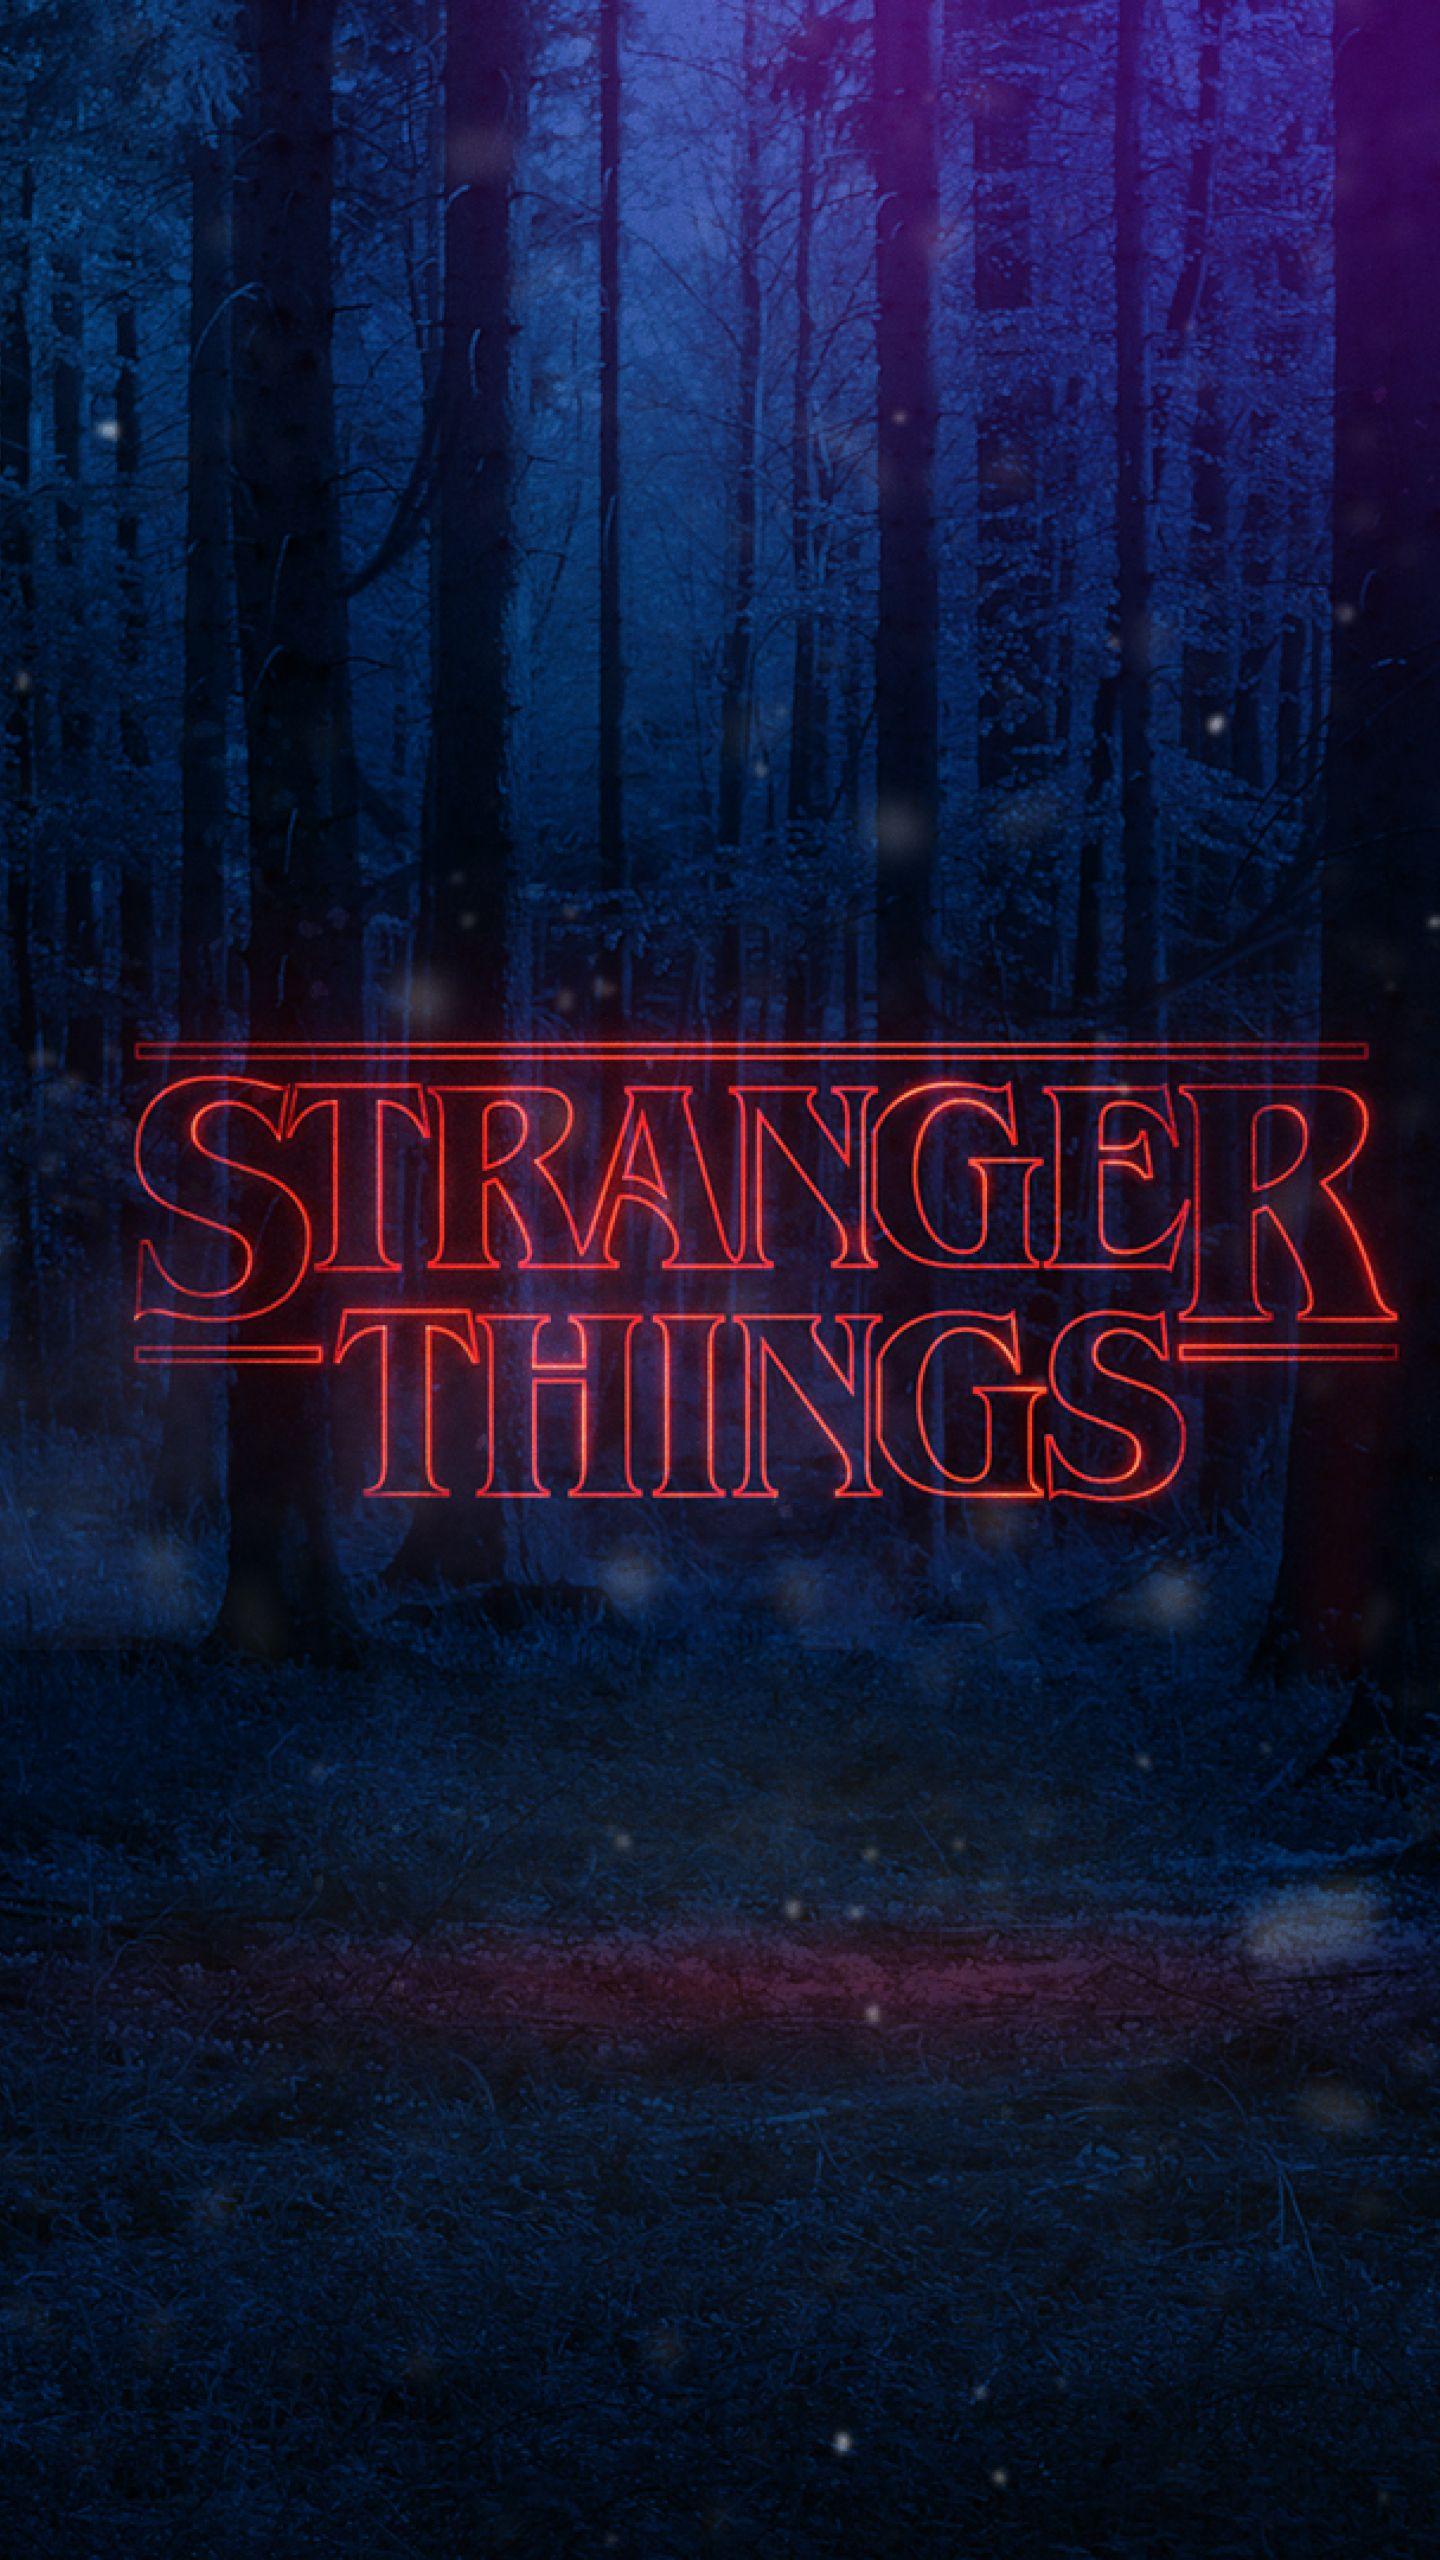 Stranger Things Season 3 Wallpaper For Computer